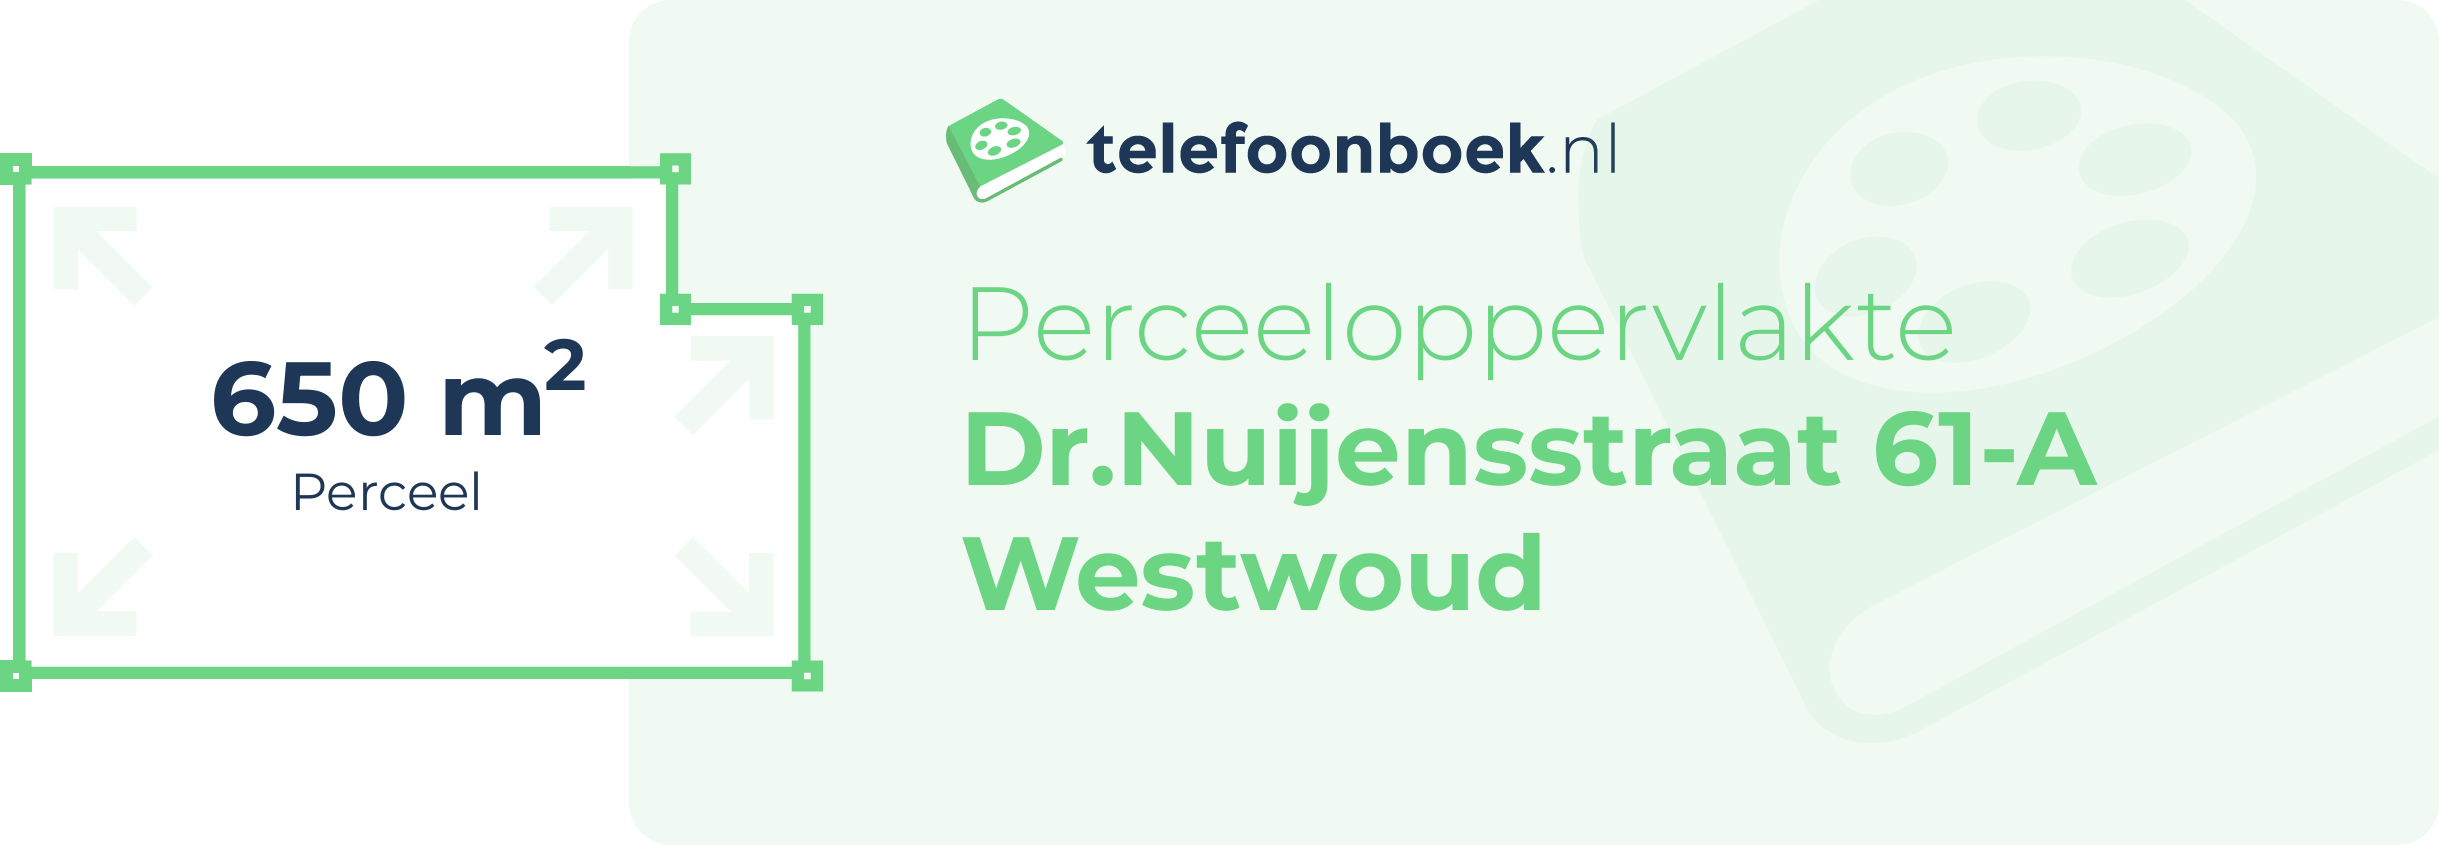 Perceeloppervlakte Dr.Nuijensstraat 61-A Westwoud